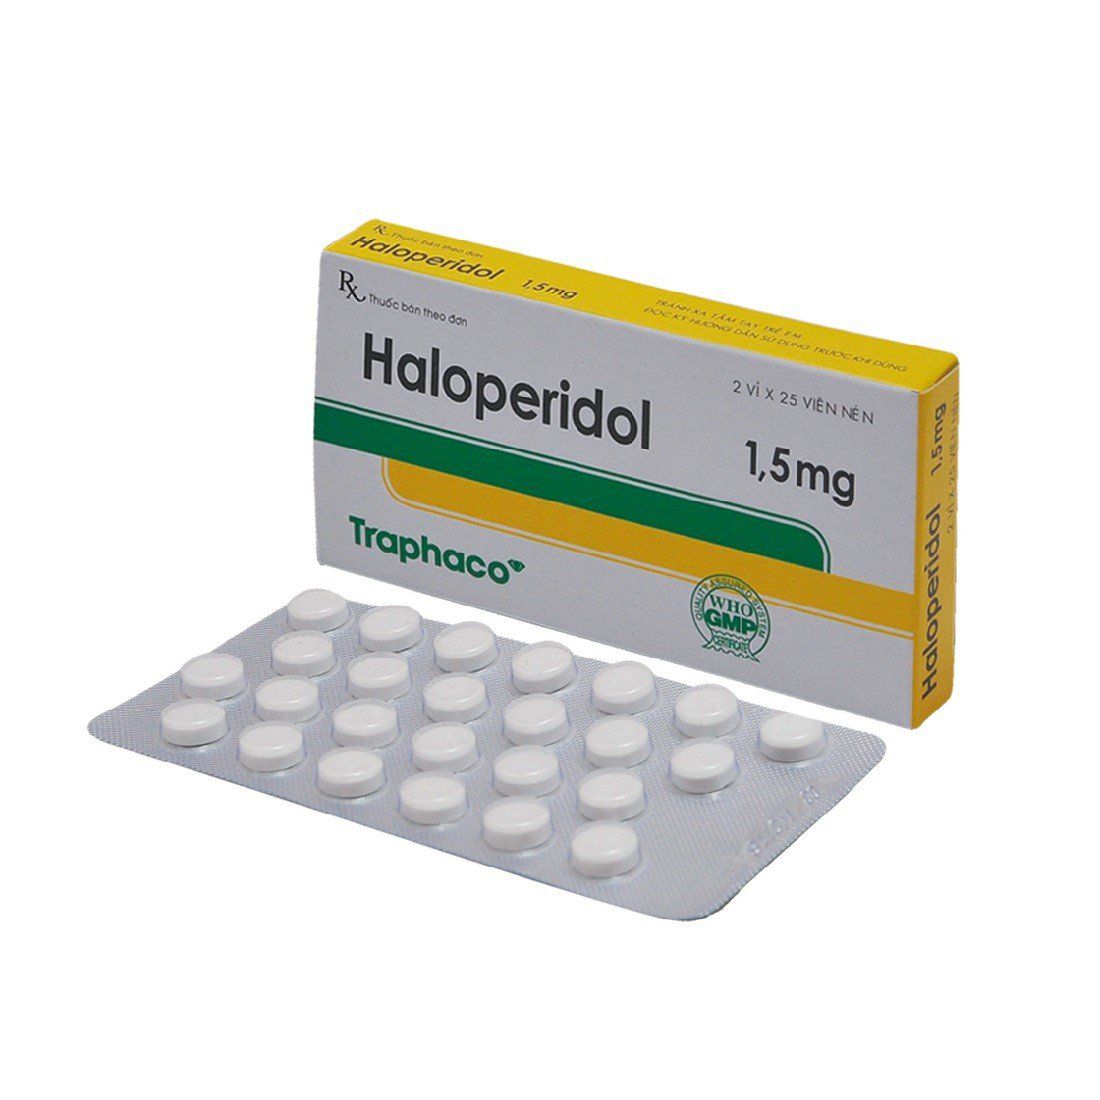 Thuốc Haloperidol: Công dụng, chỉ định và lưu ý khi dùng